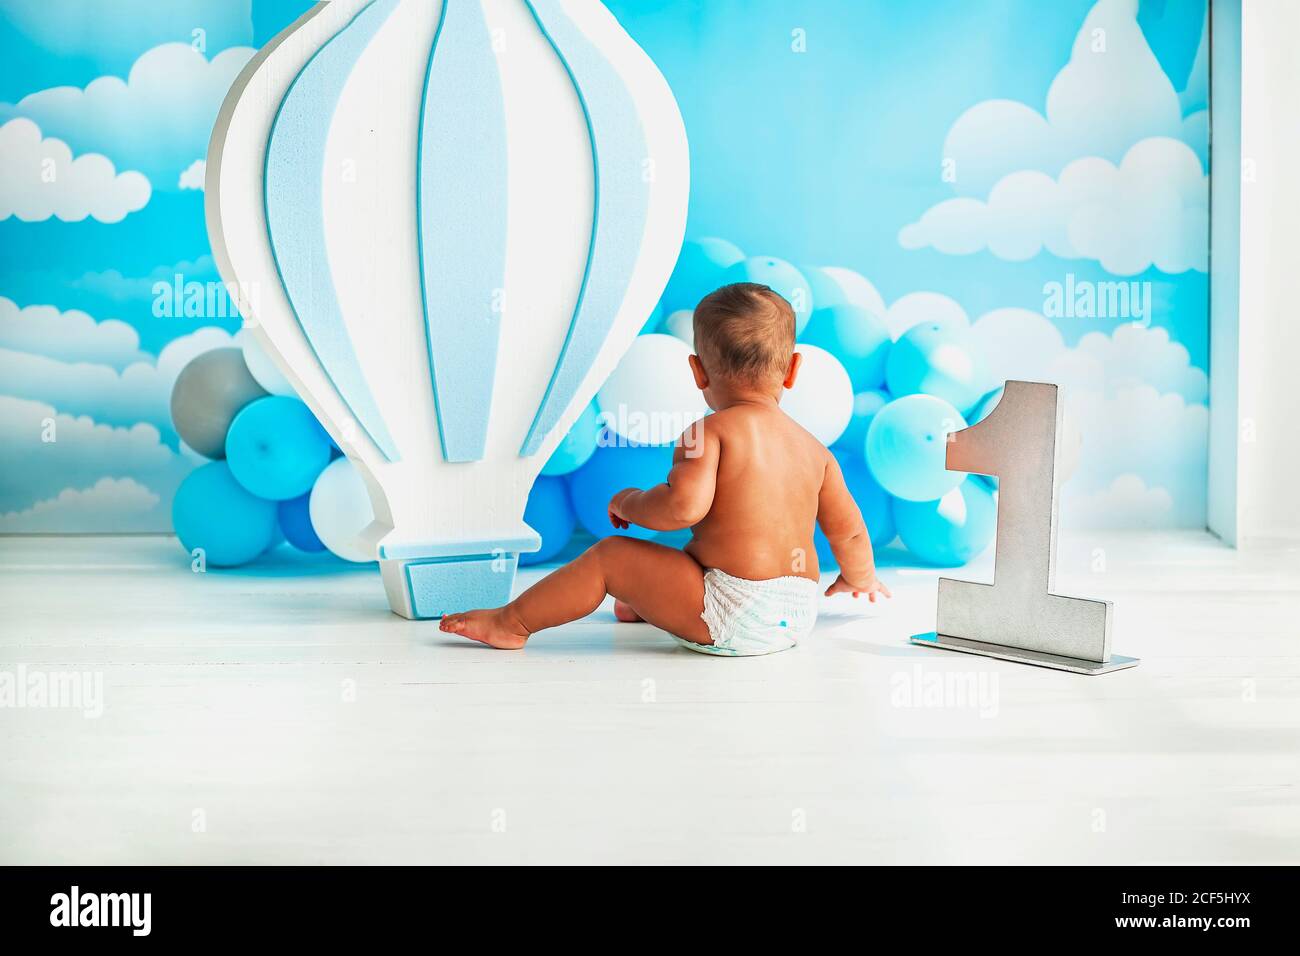 El primer cumpleaños del bebé. Decoración de fiesta con un gran globo y  pequeños globos blancos y azules contra una pared azul con nubes blancas. Un  niño pequeño Fotografía de stock -